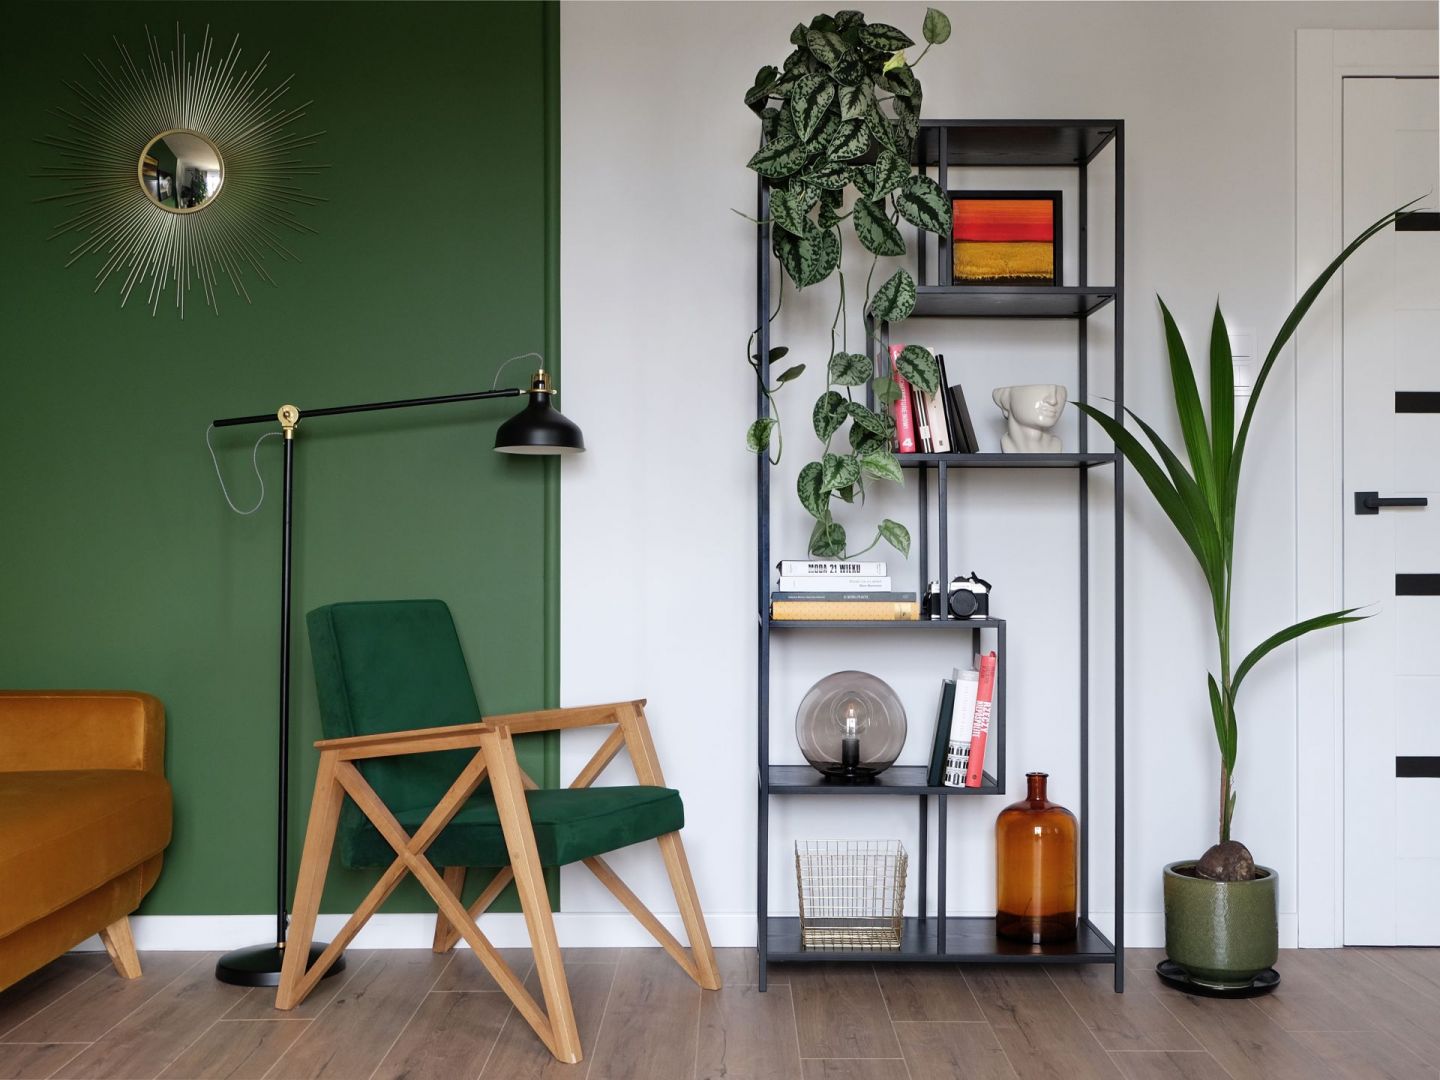 O klimat w mieszkaniu dbają stalowe meble w stylu industrialnym. Projekt wnętrza: Pura Design